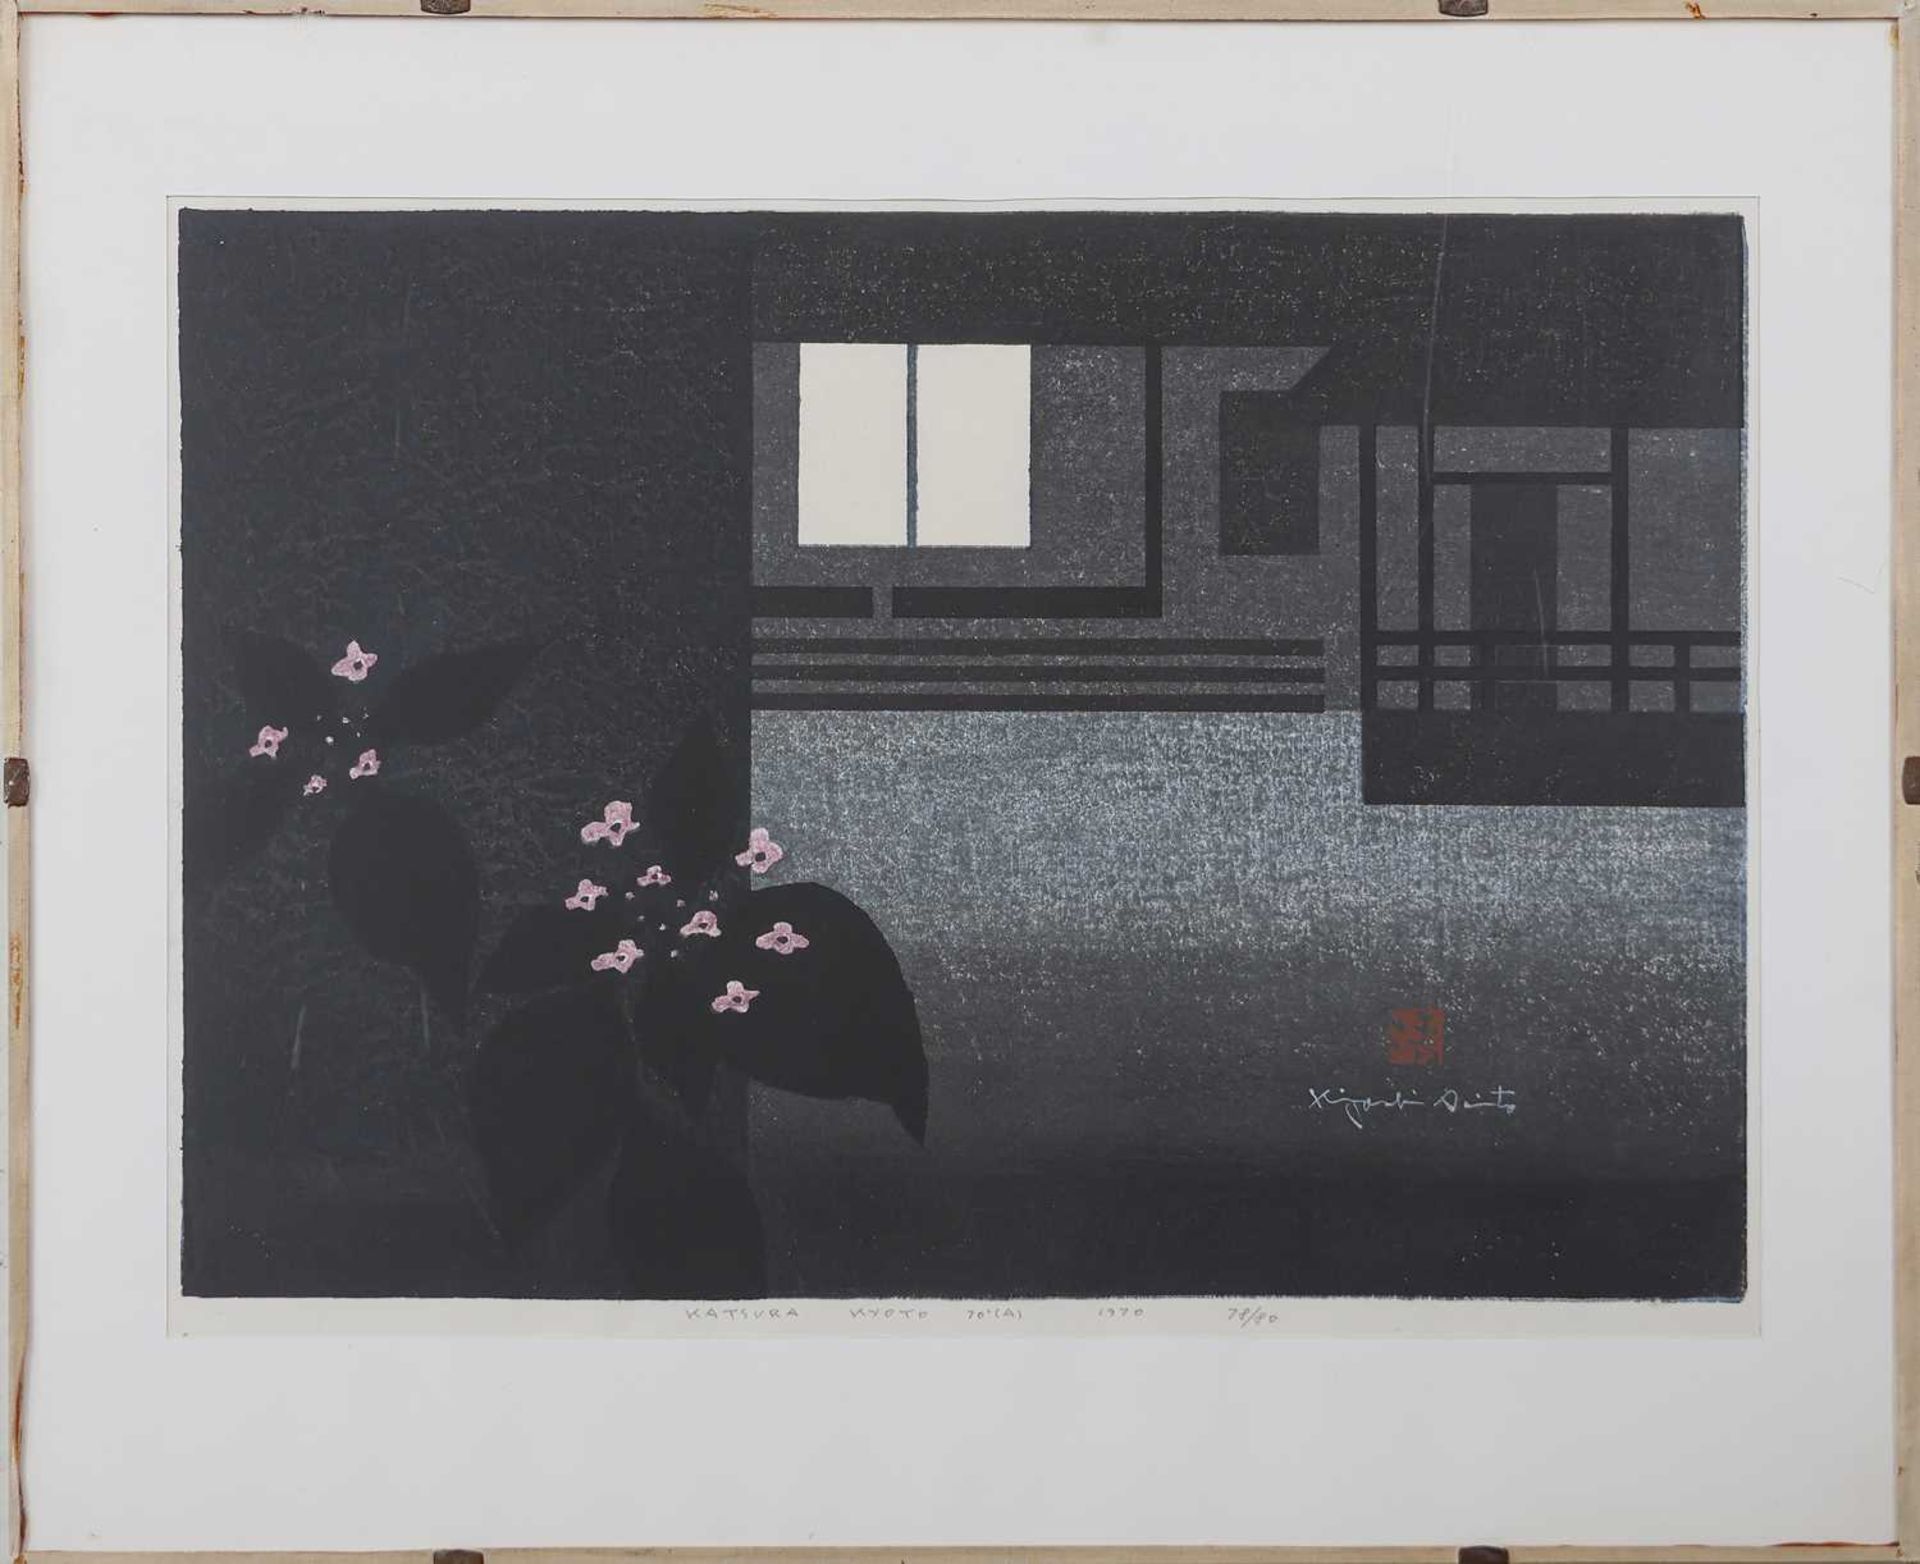 SAITO KIYOSHI (1907-1997) Blockdruck "Katsura Kyoto"